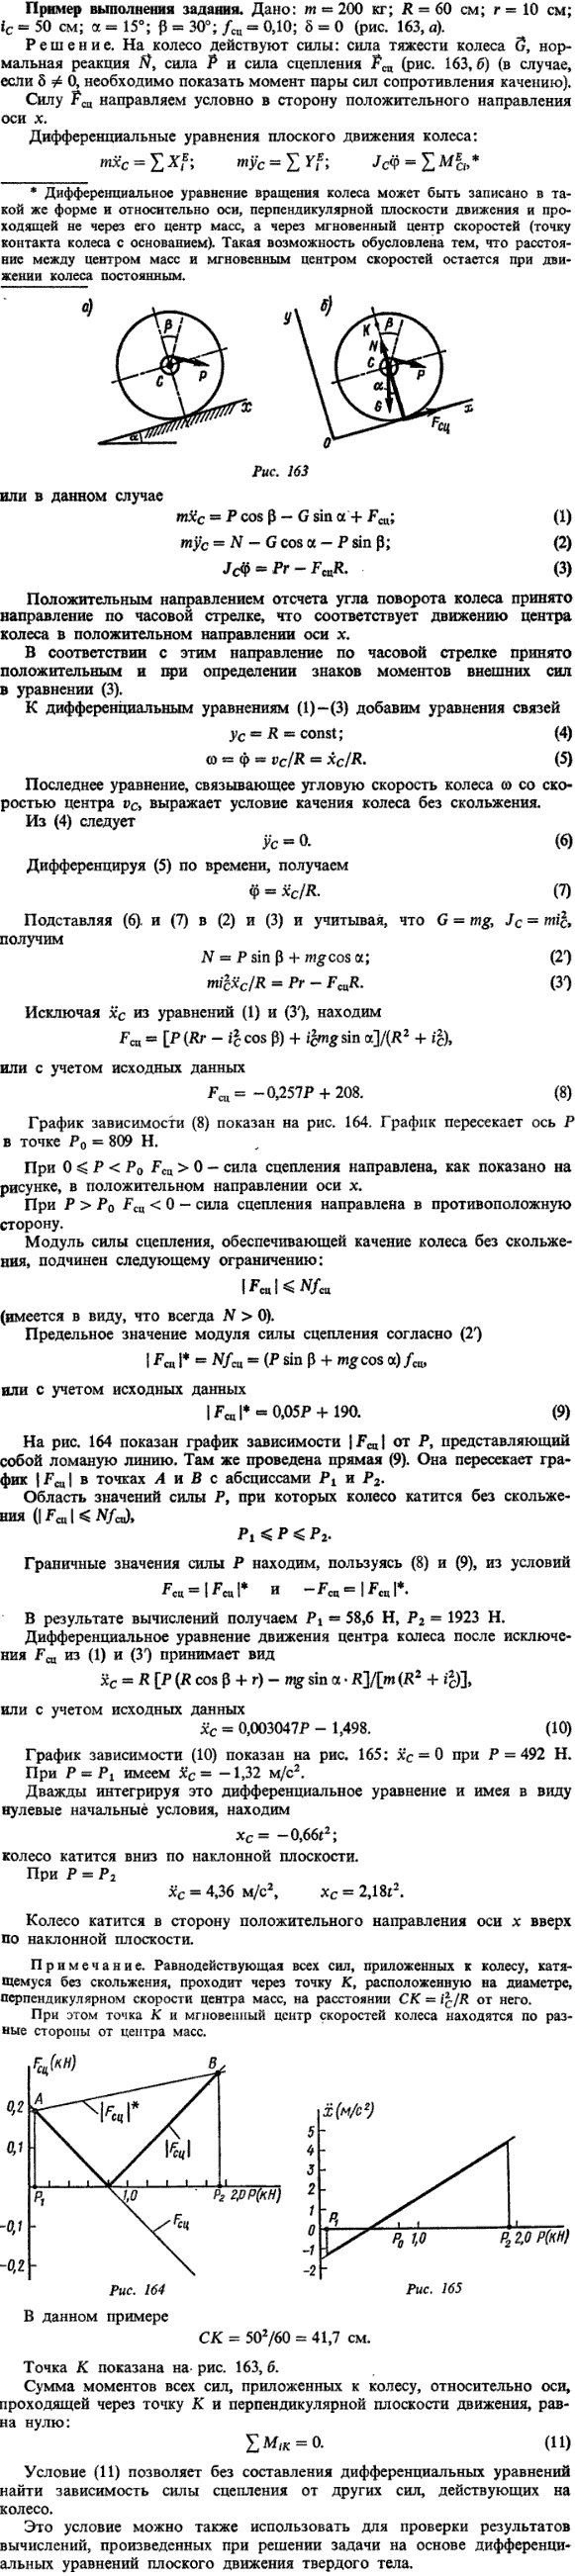 Пример решения Д12 Яблонский. m= 200 кг; R = 60 см; r = 10 см; iC = 50 см; a = 15°..., Задача 14931, Теоретическая механика